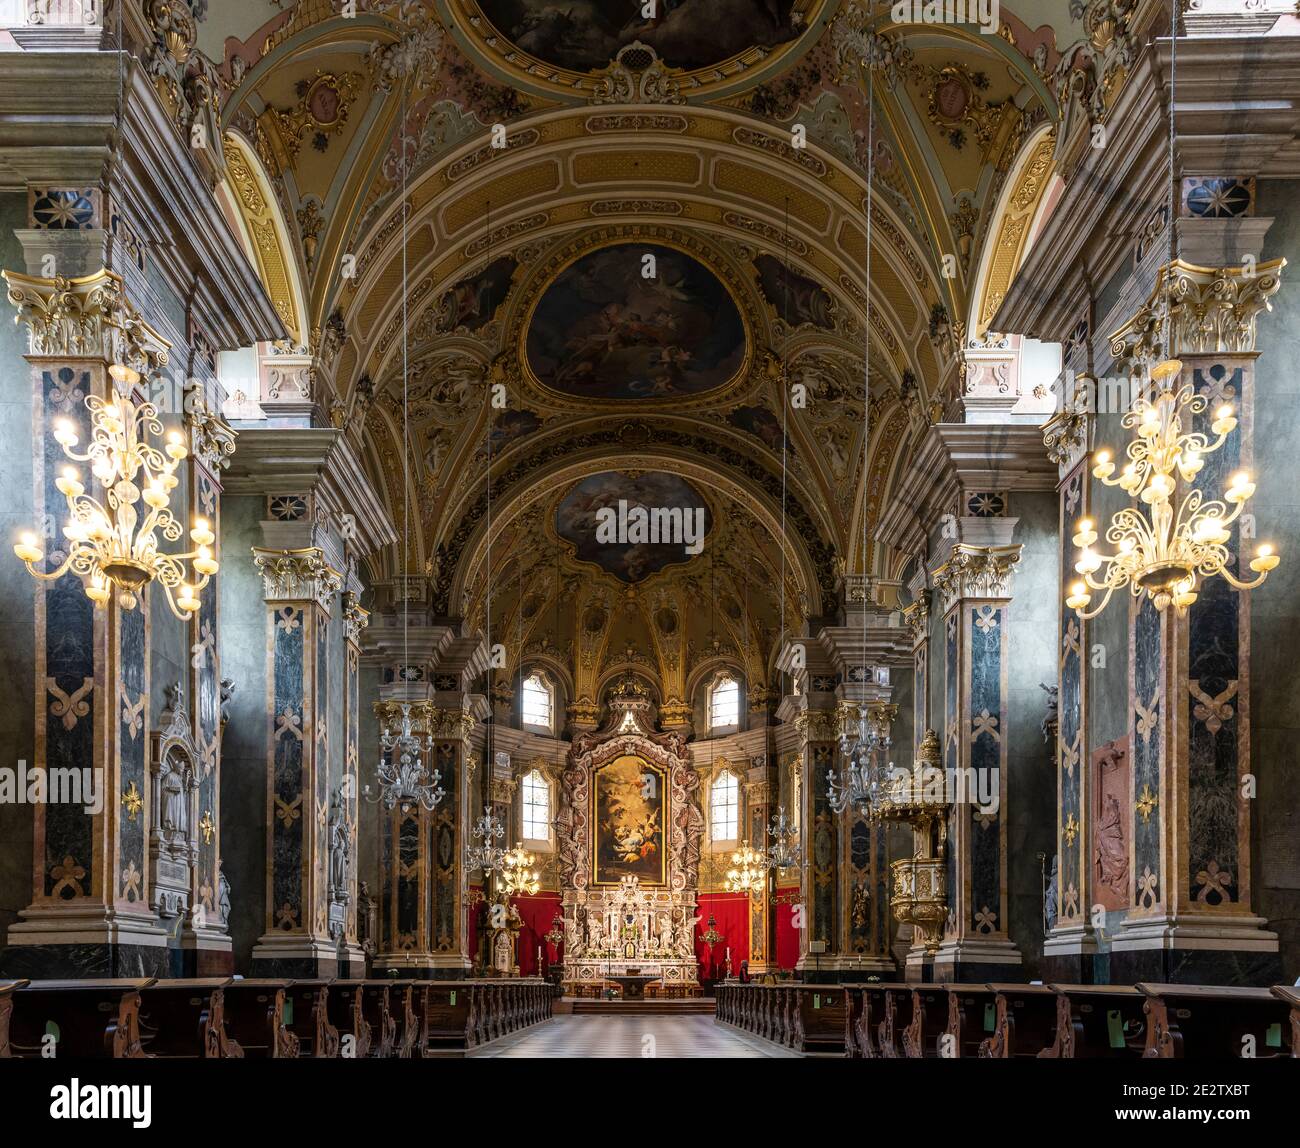 Brixen, Italien - 5. Oktober 2020: Innenansicht der Dom-Domkirche von Brixen mit barocker Architektur und Altar. Stockfoto